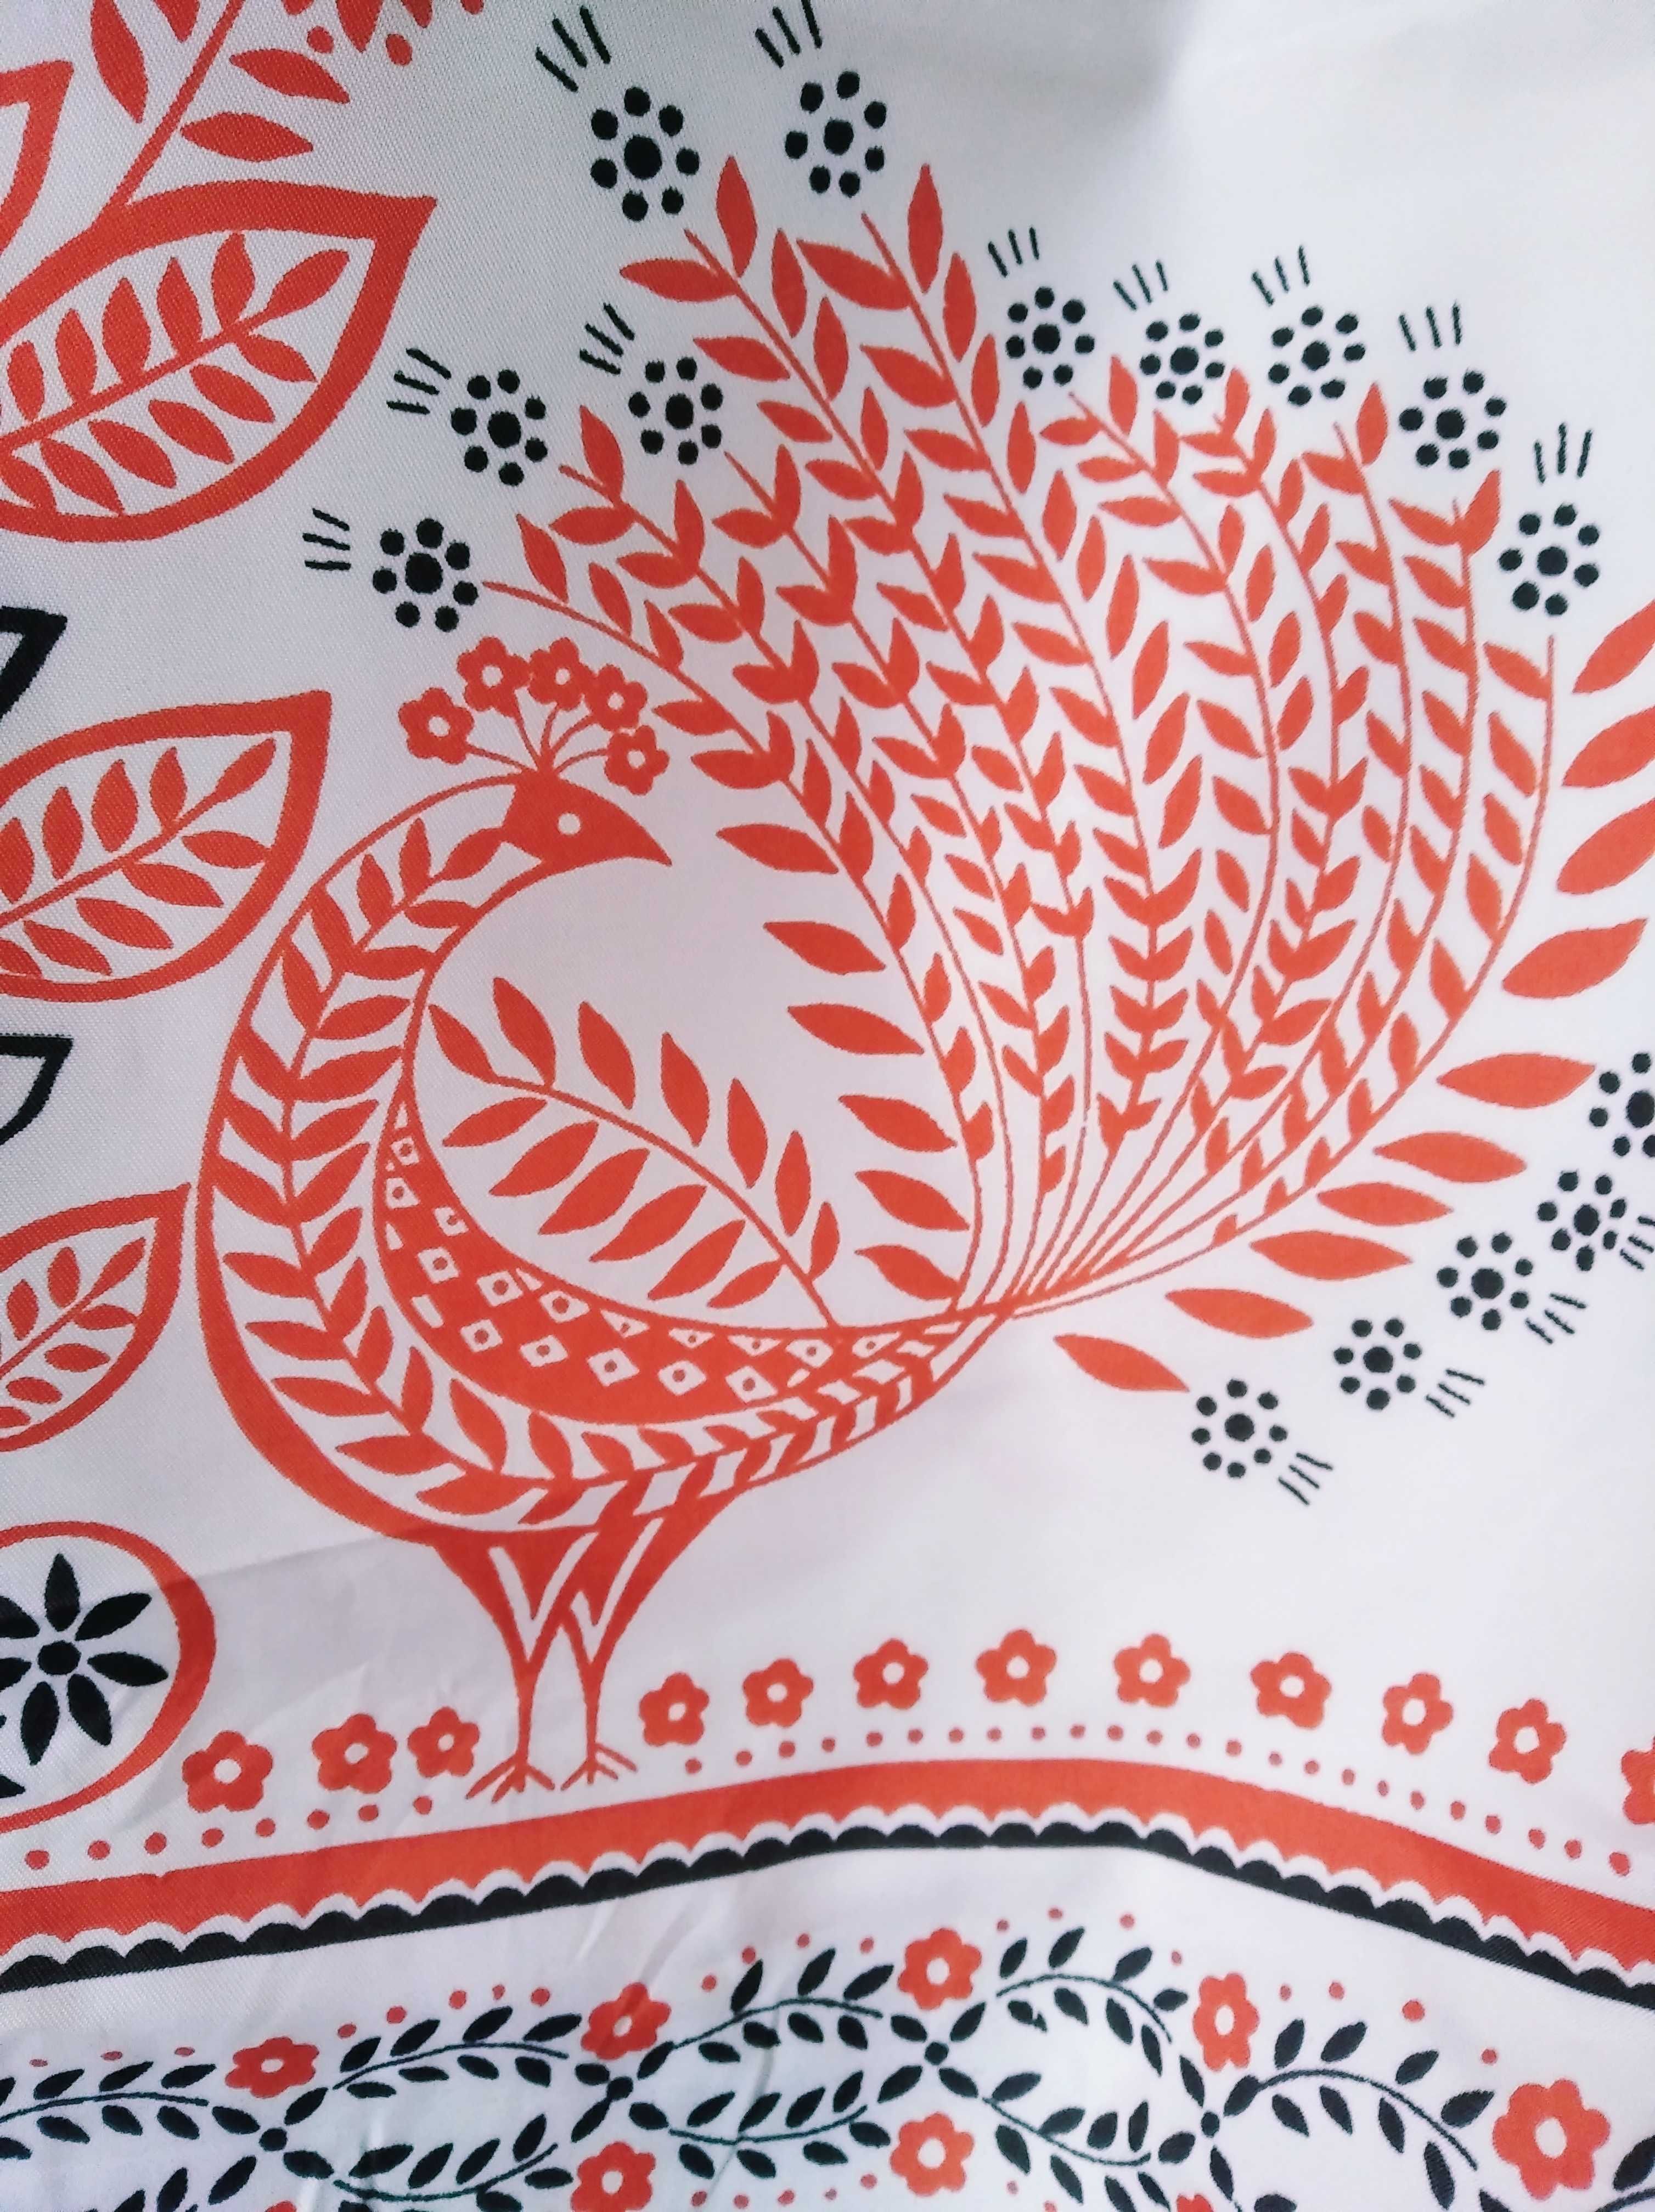 Рушники шёлк птицы цветы полотенца украинские